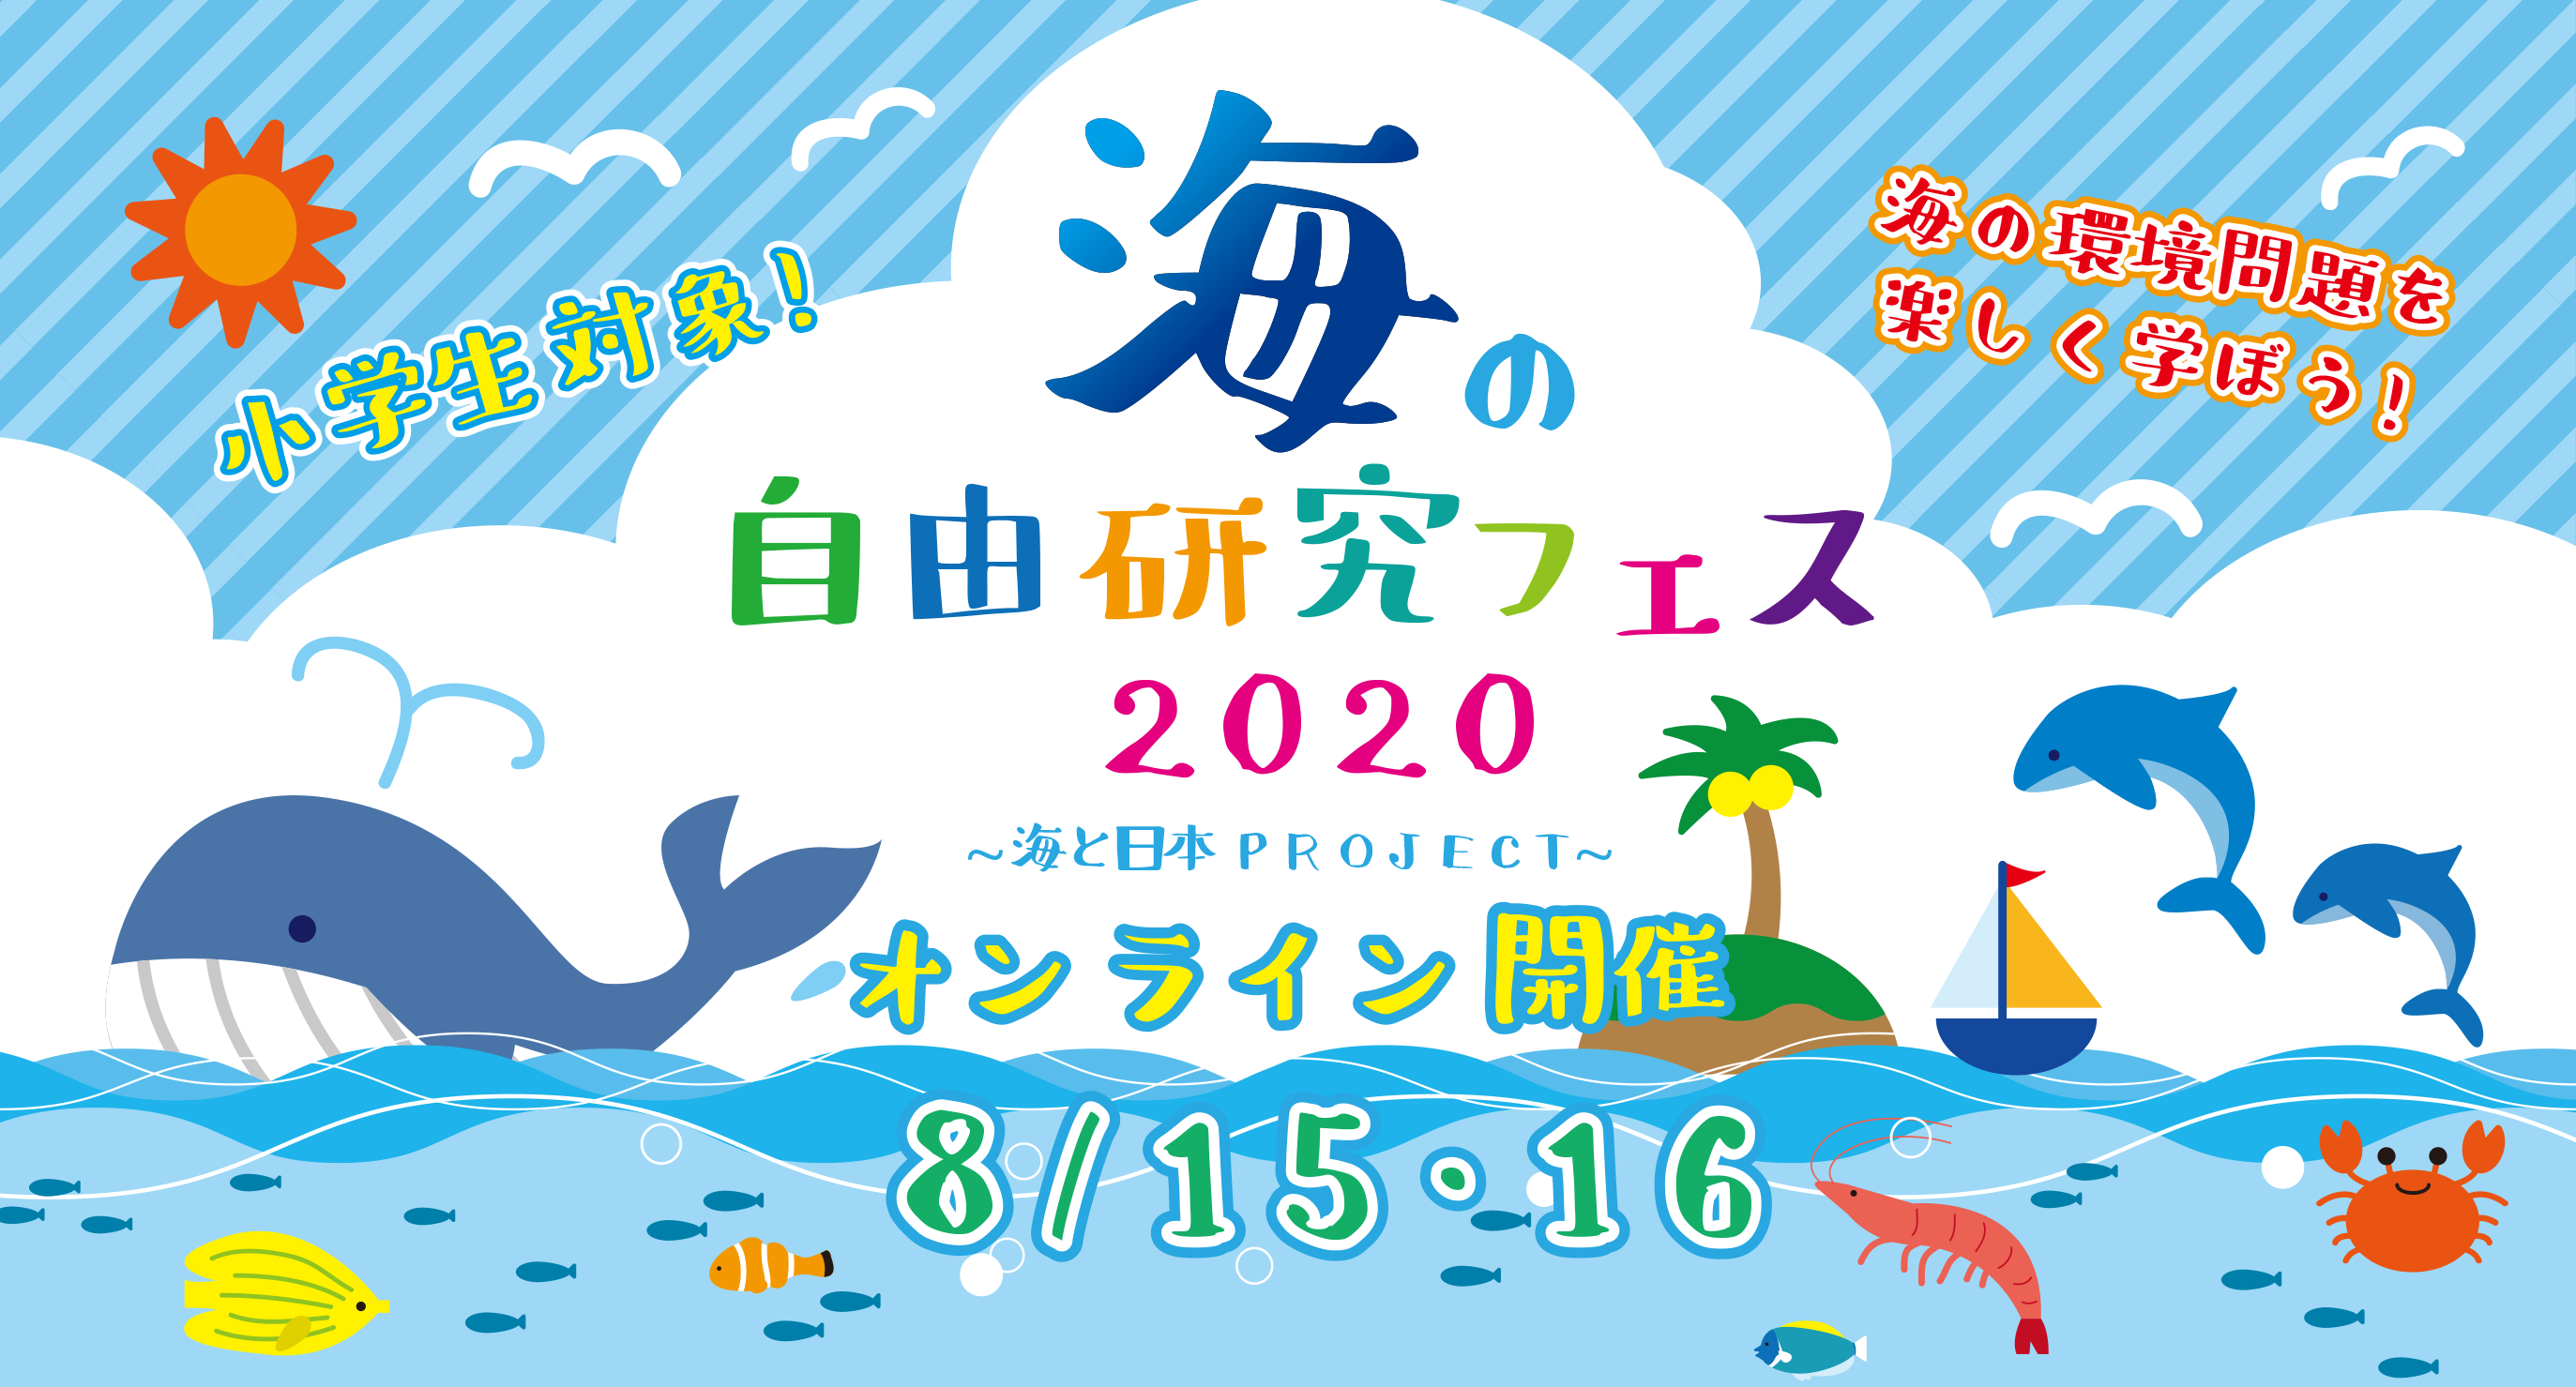 海の自由研究フェス 公式ホームページ 海と日本project